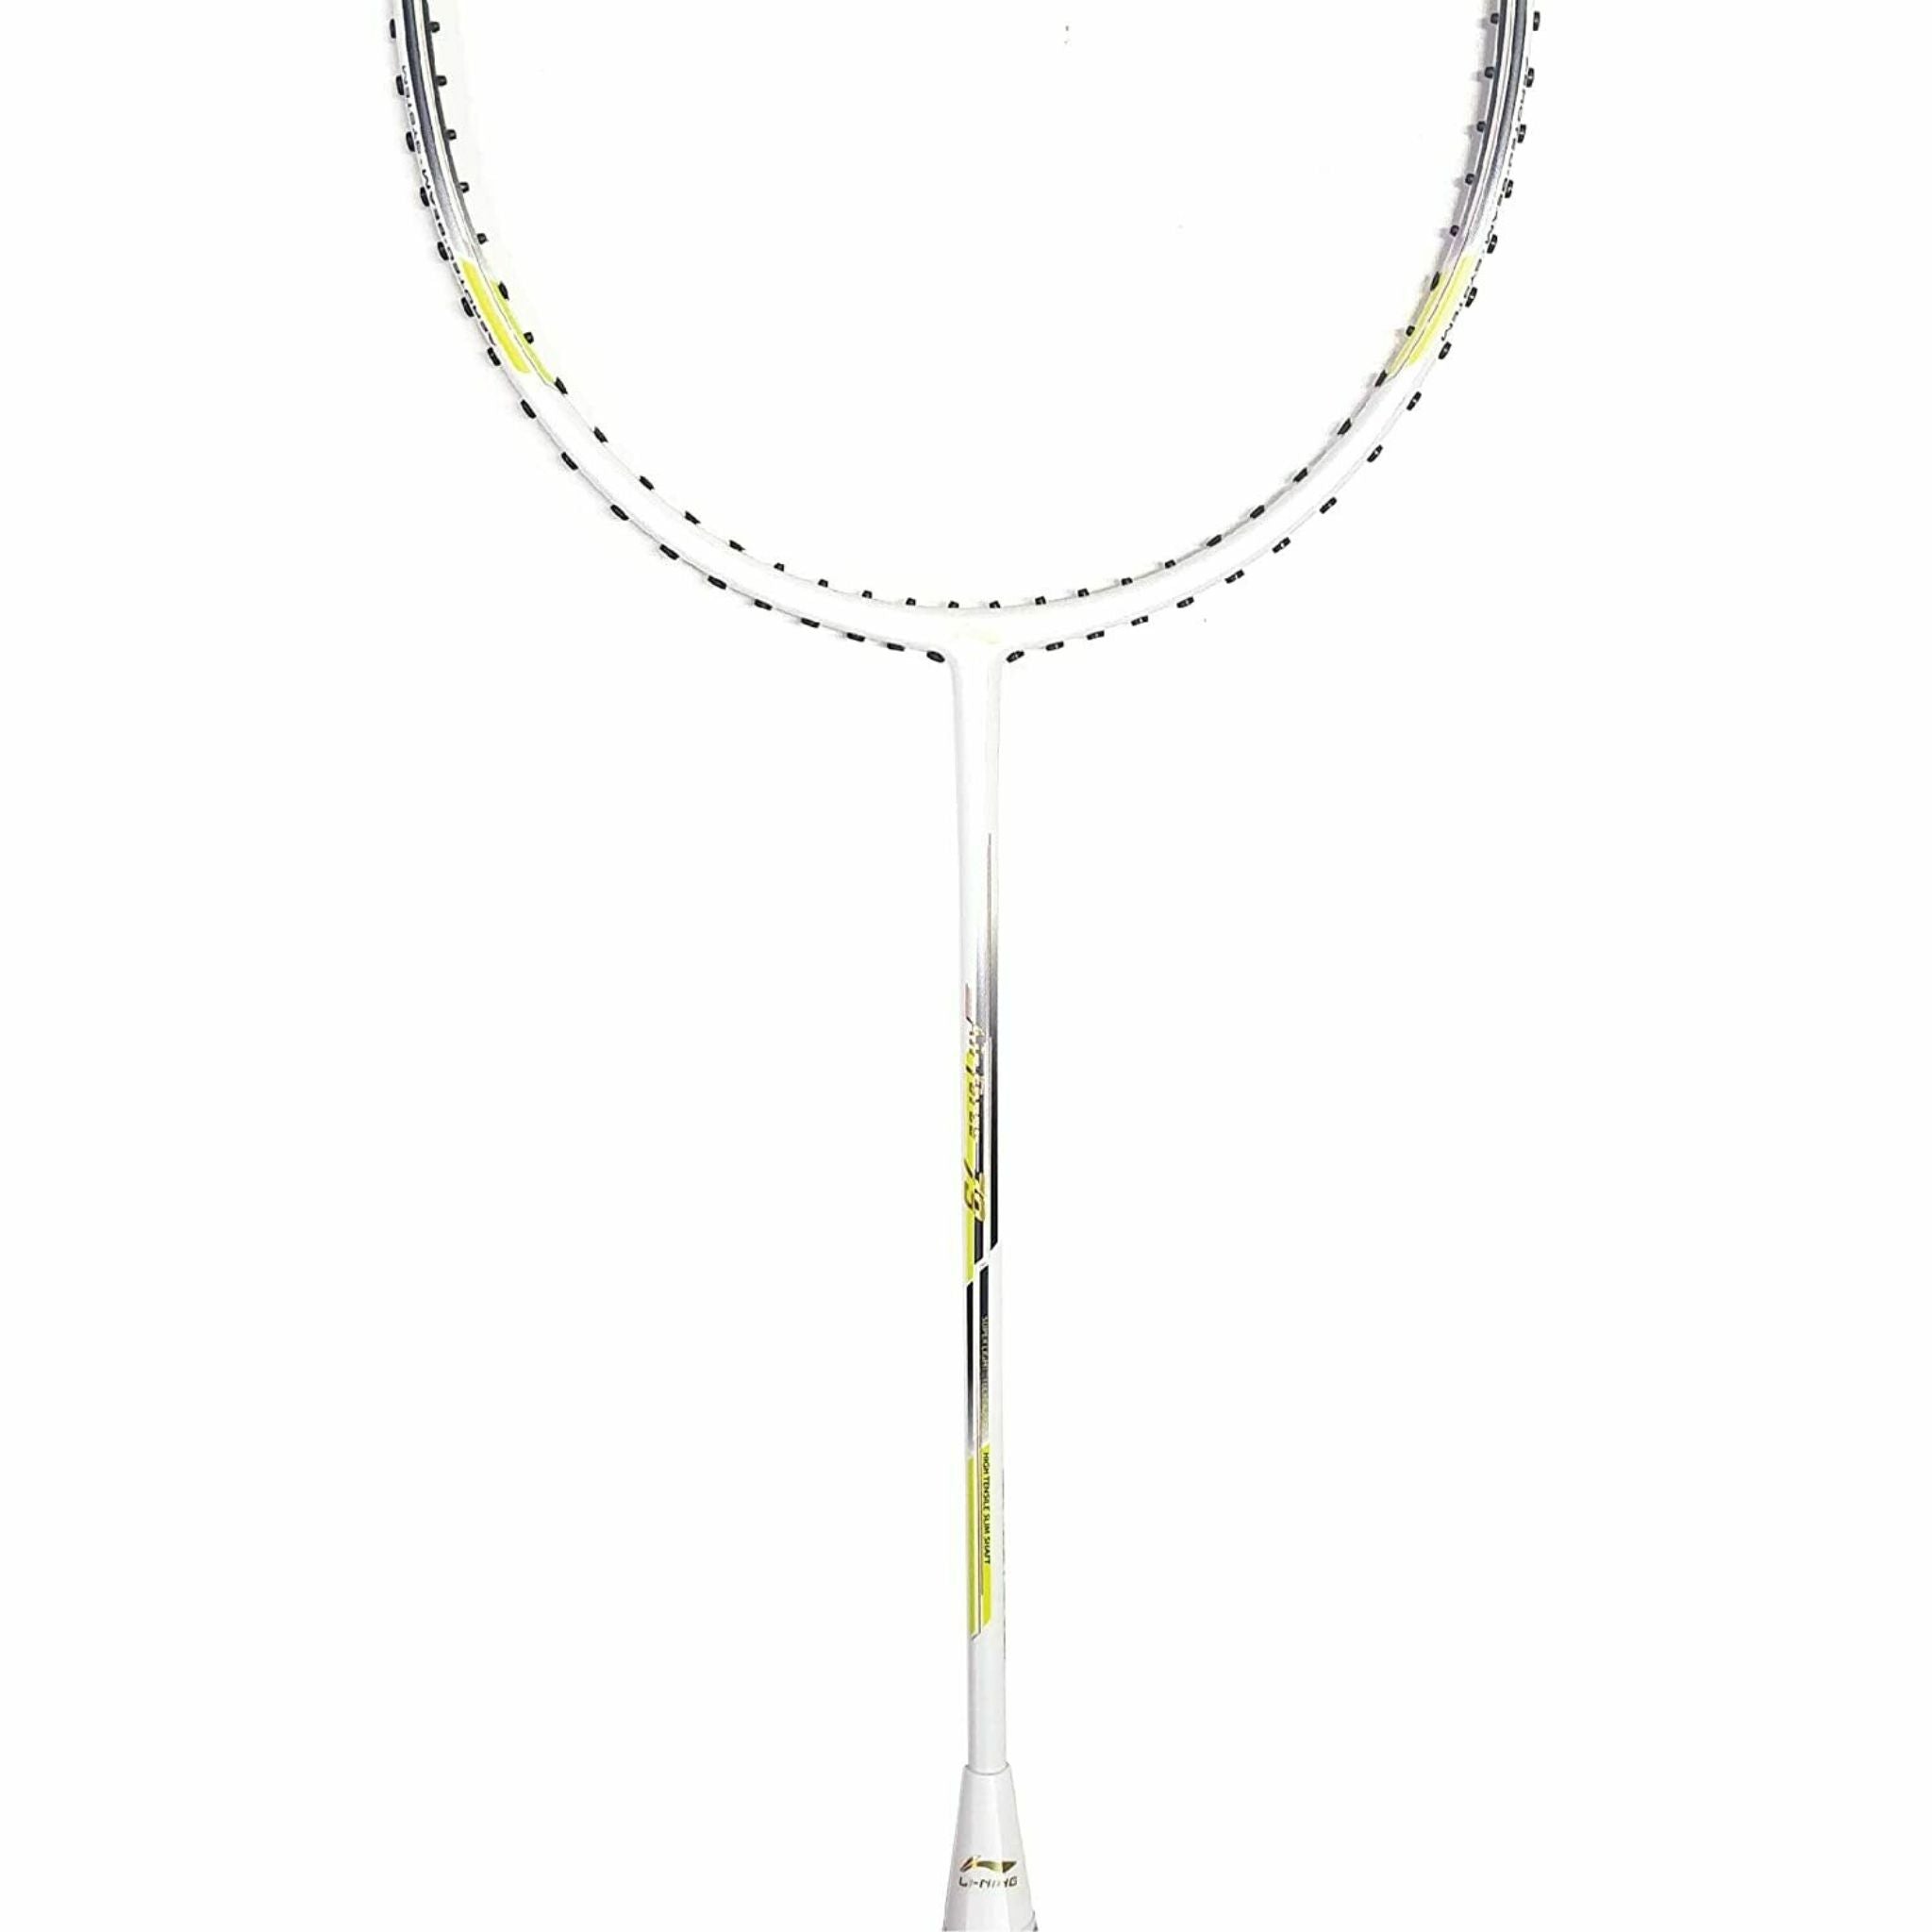 LI-NING Air-Force 79 White Badminton Racket